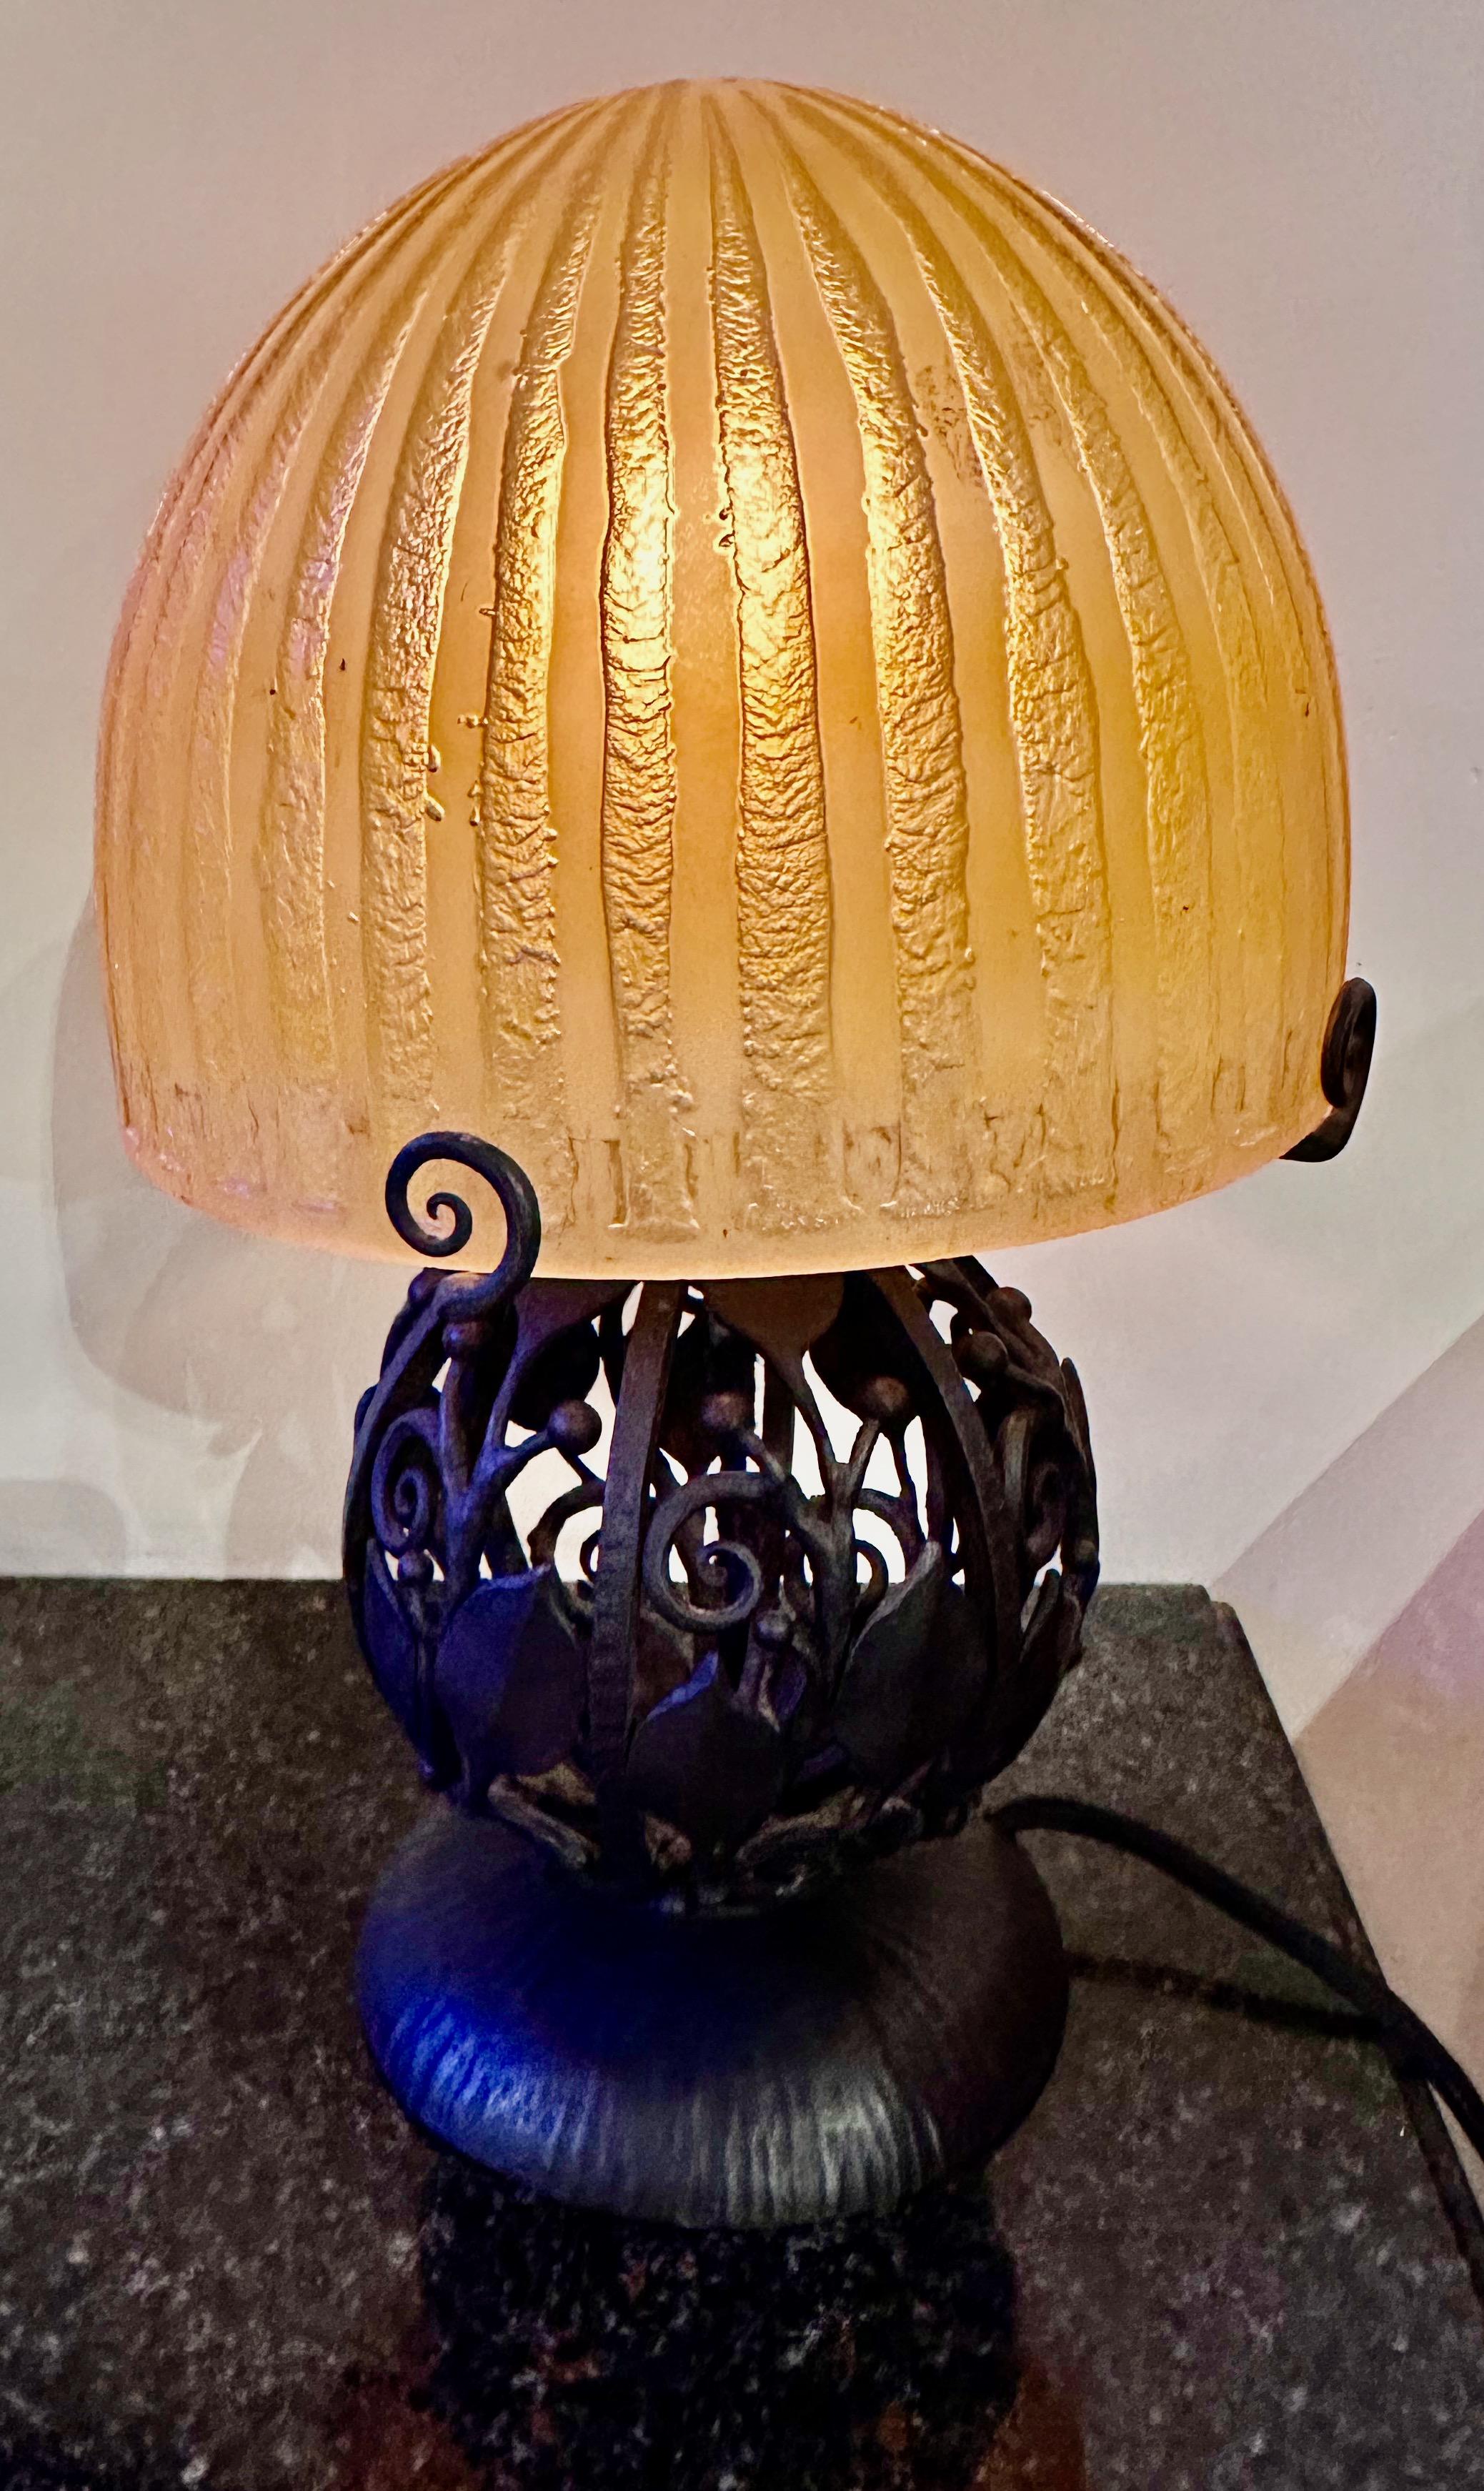 Lampe de table Art déco en fer à globe français gravé à l'acide par Daum et Katona. Cette lampe magnifique et inhabituelle est fabriquée selon la technique du 